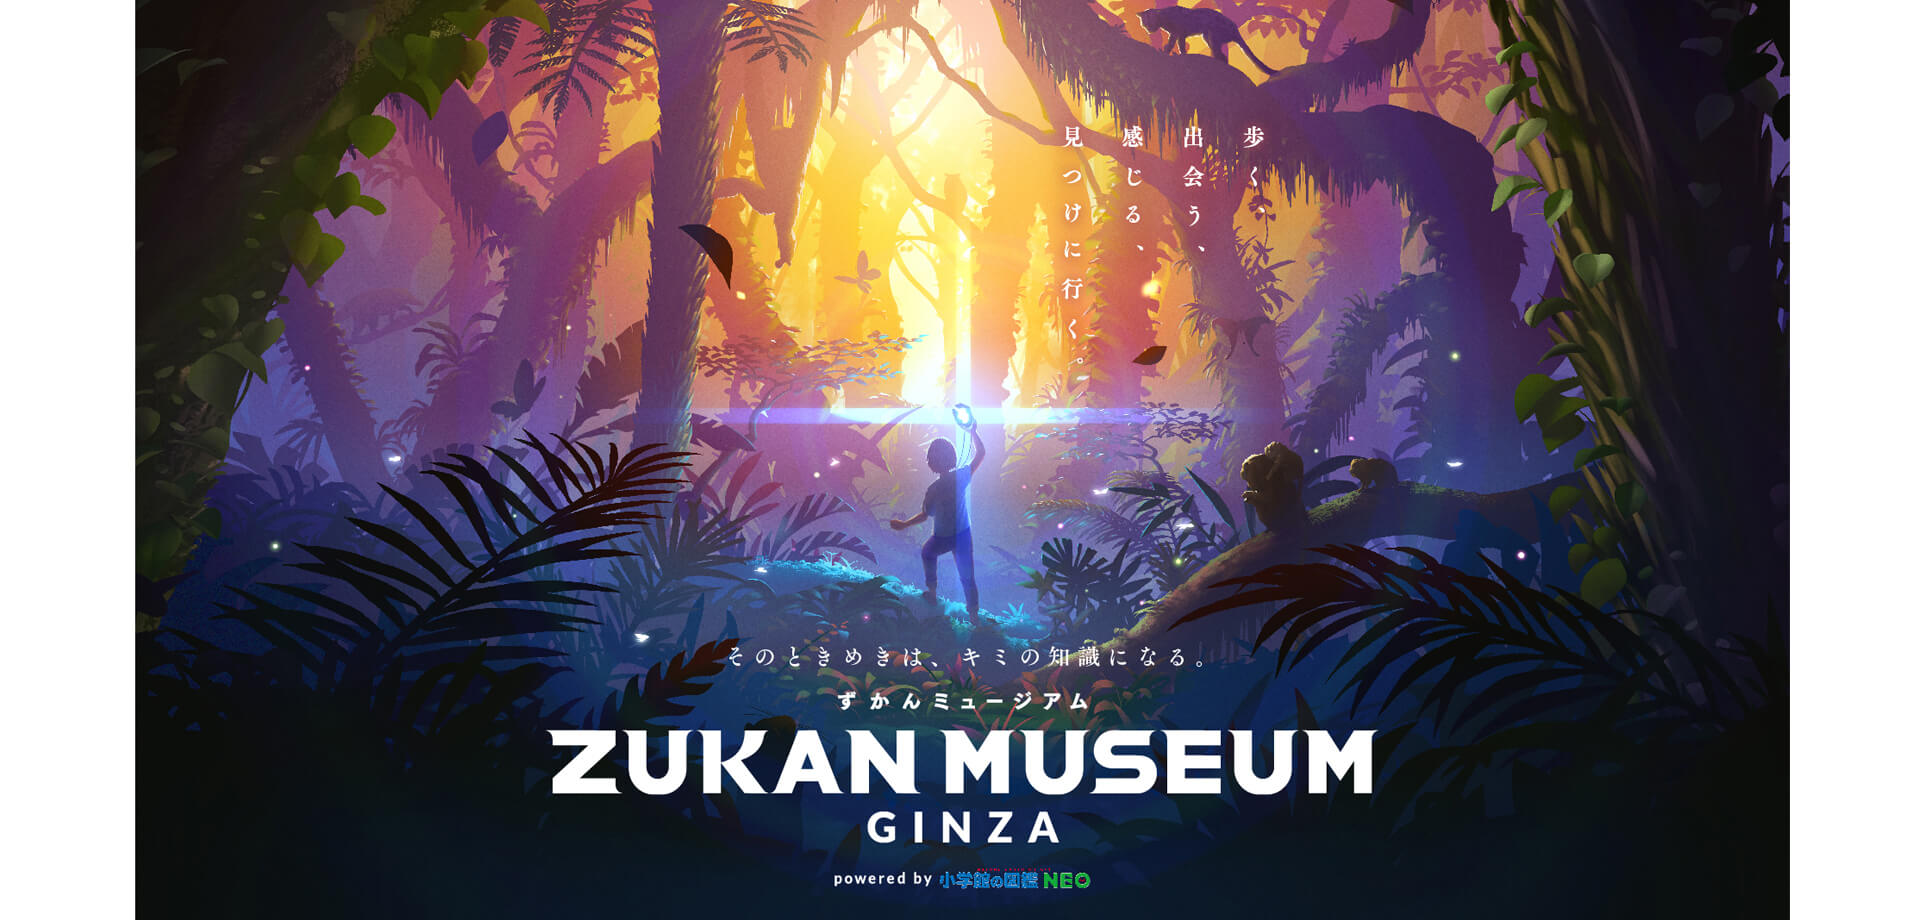 ZUKAN MUSEUM GINZA powered by 小学館の図鑑NEO 子ども料金半額キャンペーン